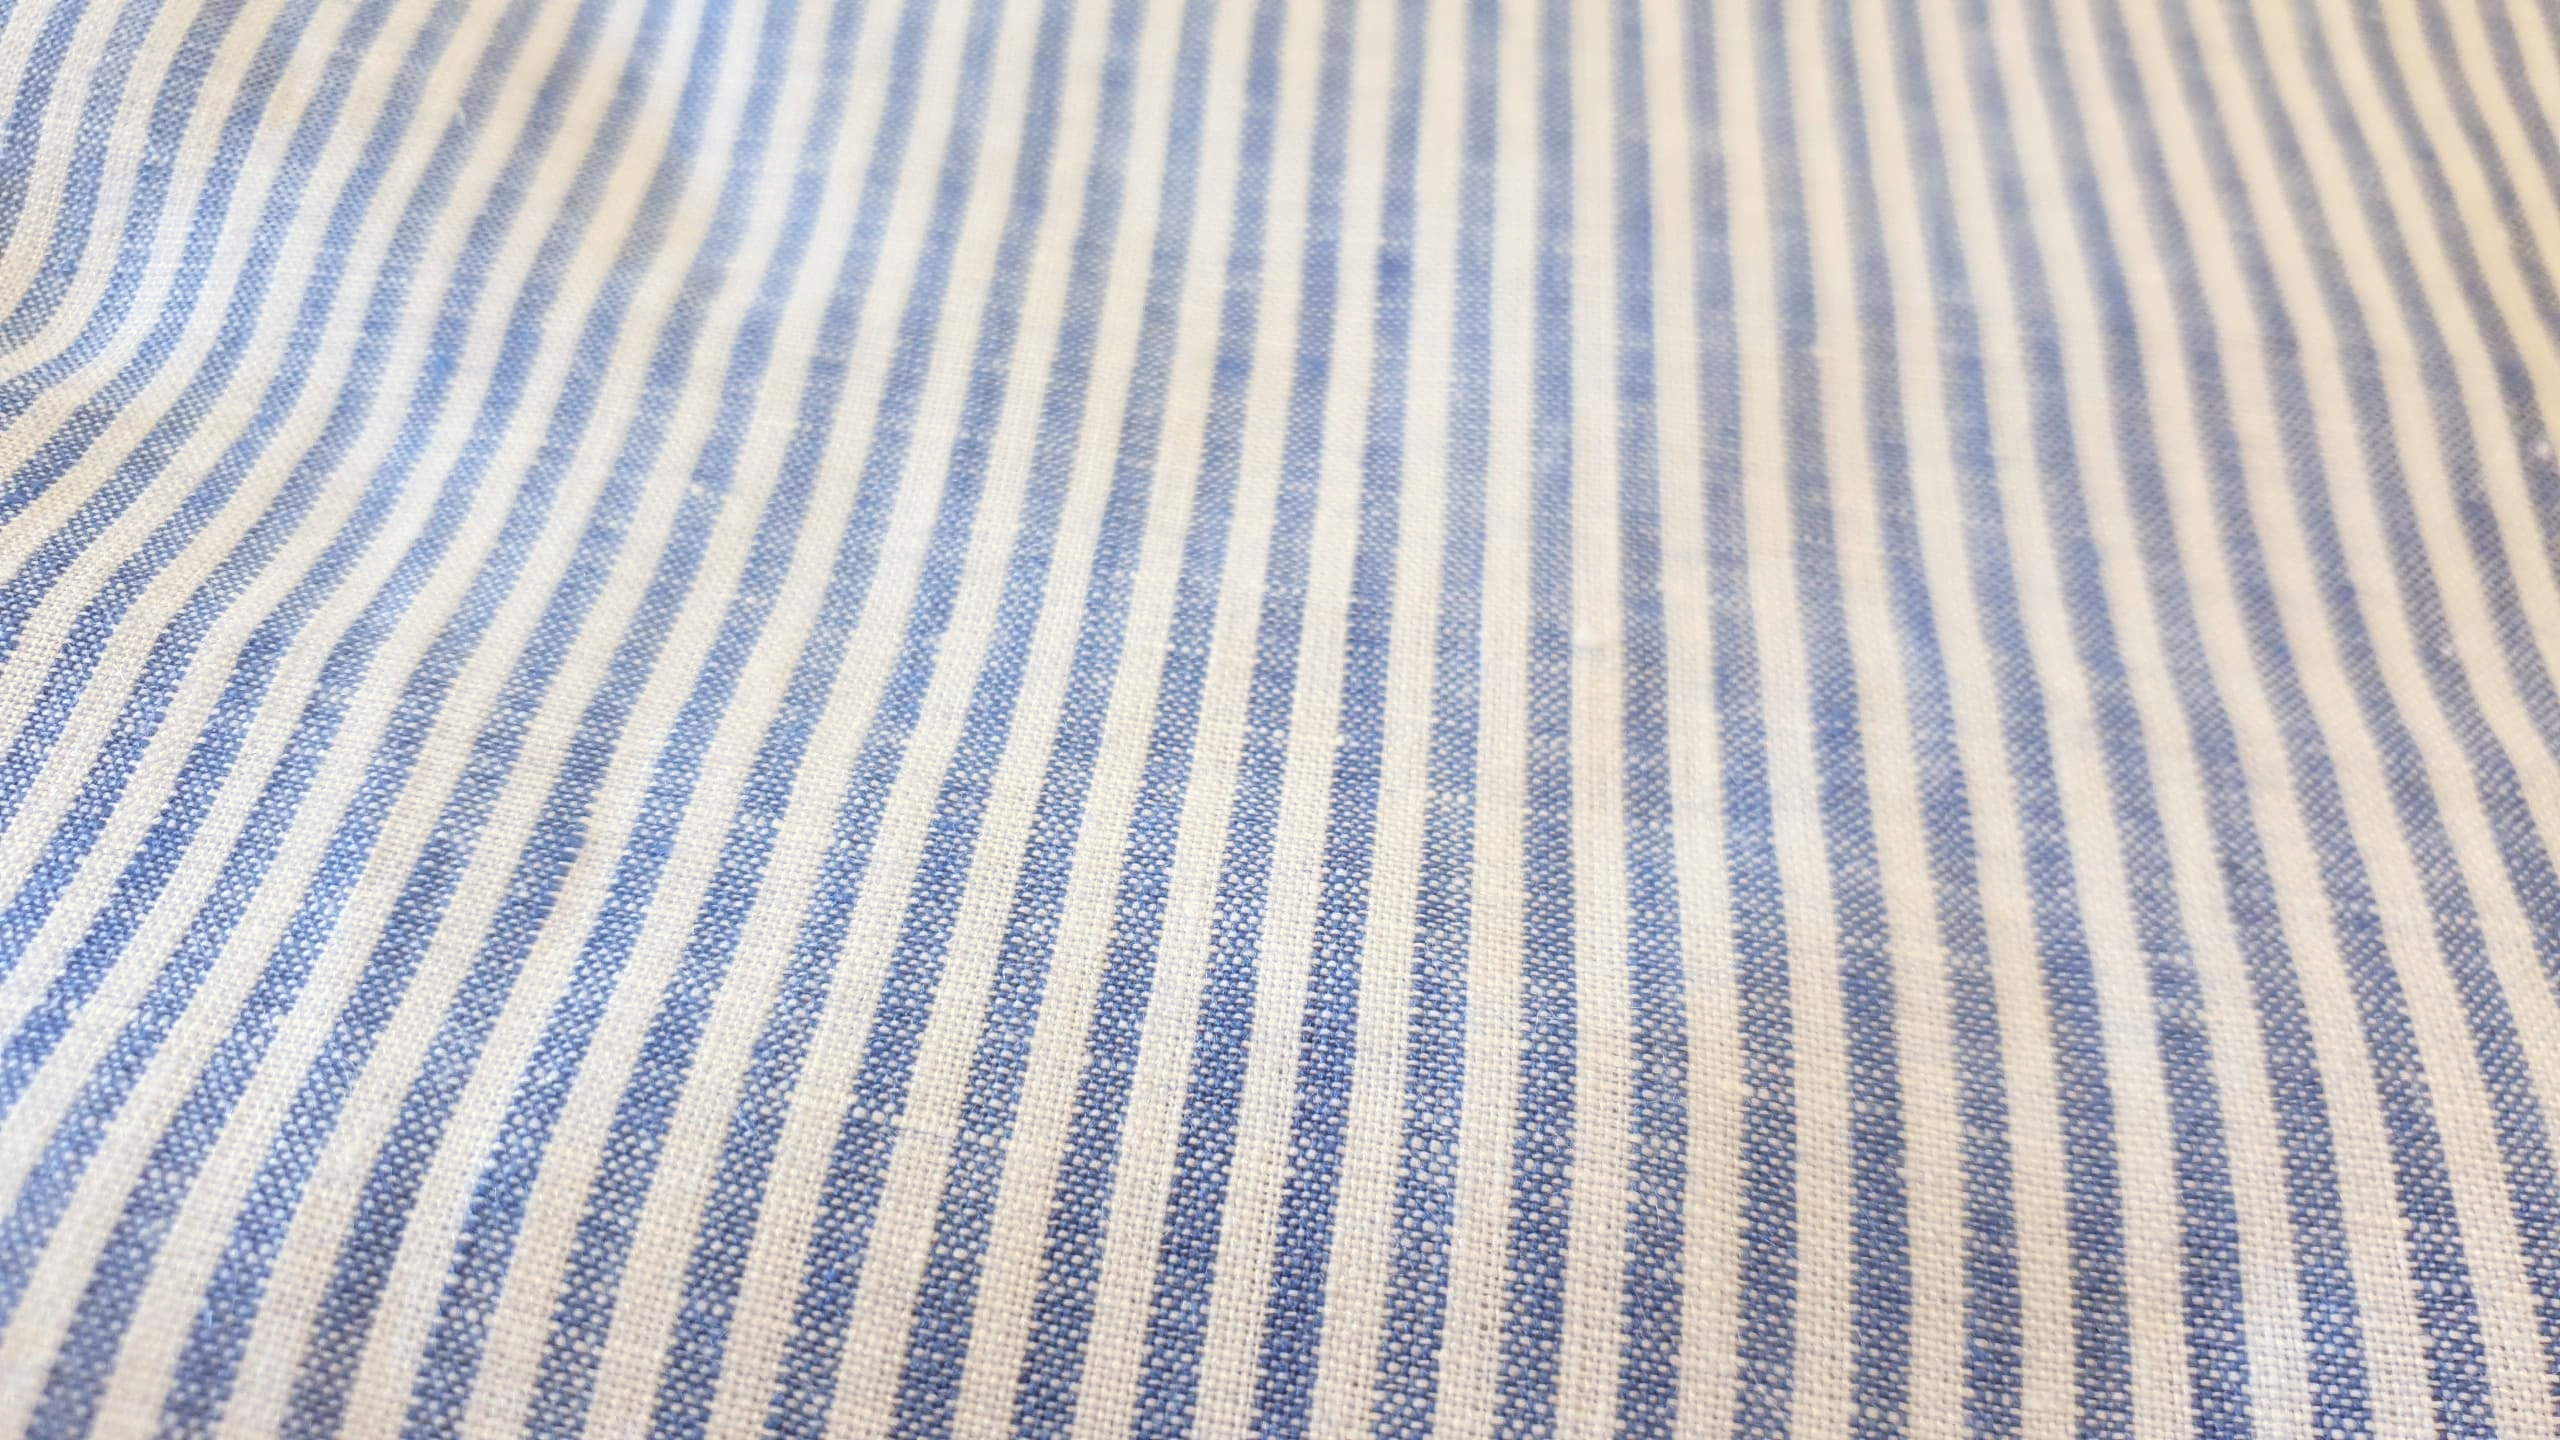 Striped linen- small blue